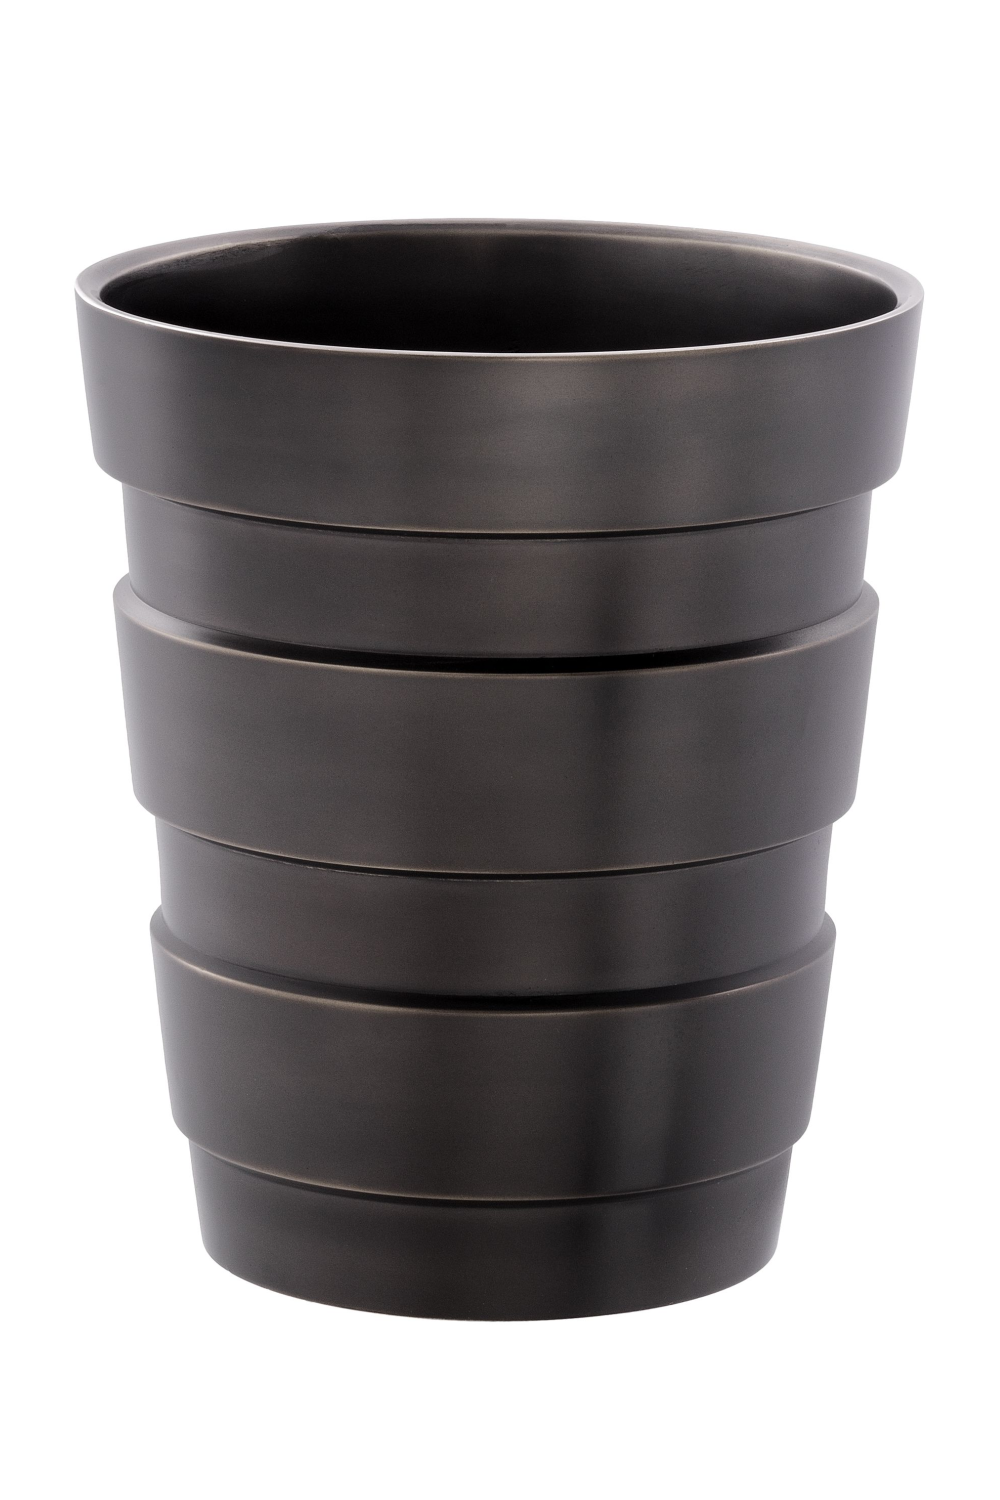 Highlight Bronze Vase | Eichholtz Apex | OROA